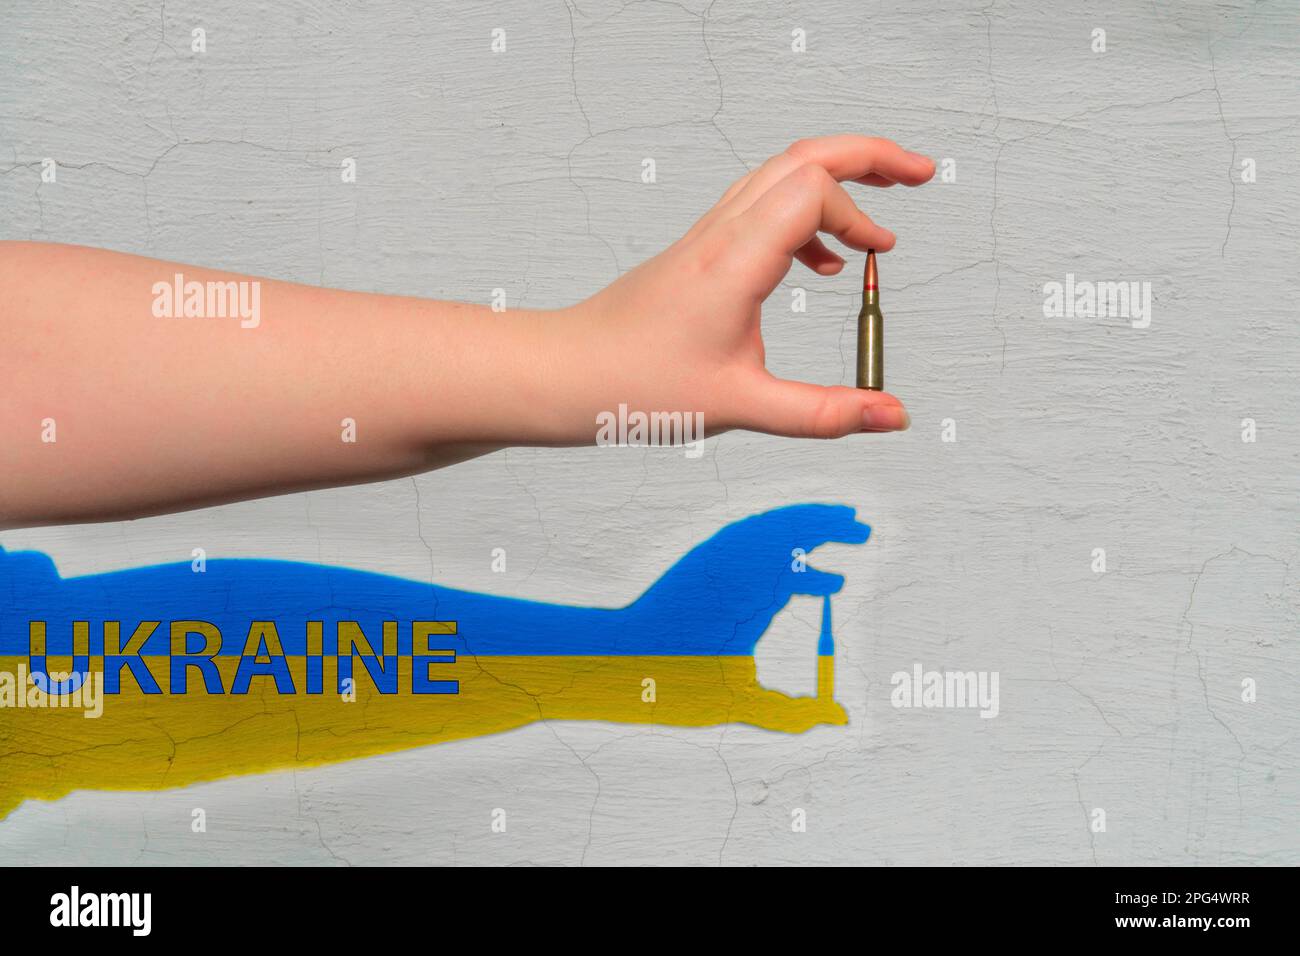 Cartuccia del fucile in mano. Ombra di colore giallo-blu con l'iscrizione - l'Ucraina è formata sul muro. Il concetto di sostegno militare all'Ucraina Foto Stock